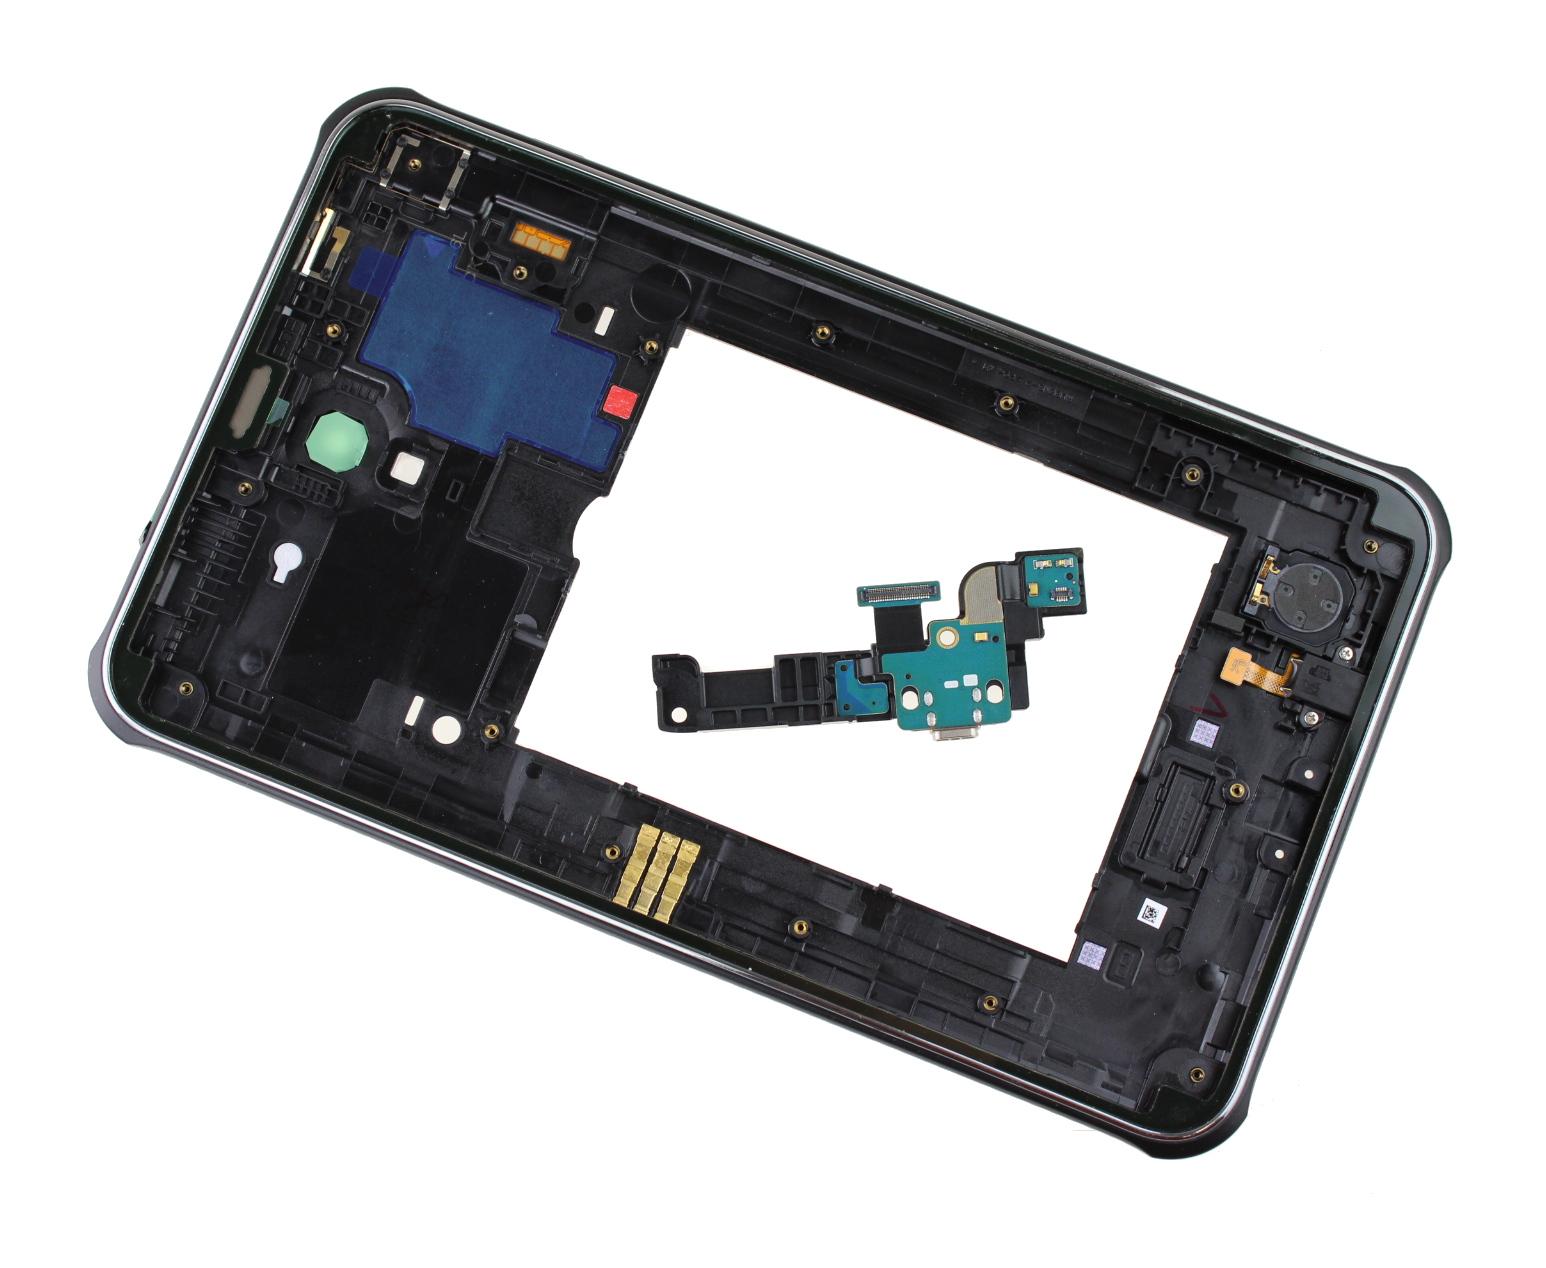 Originál korpus Samsung Galaxy Active SM-360 - ráměček s anténami černý